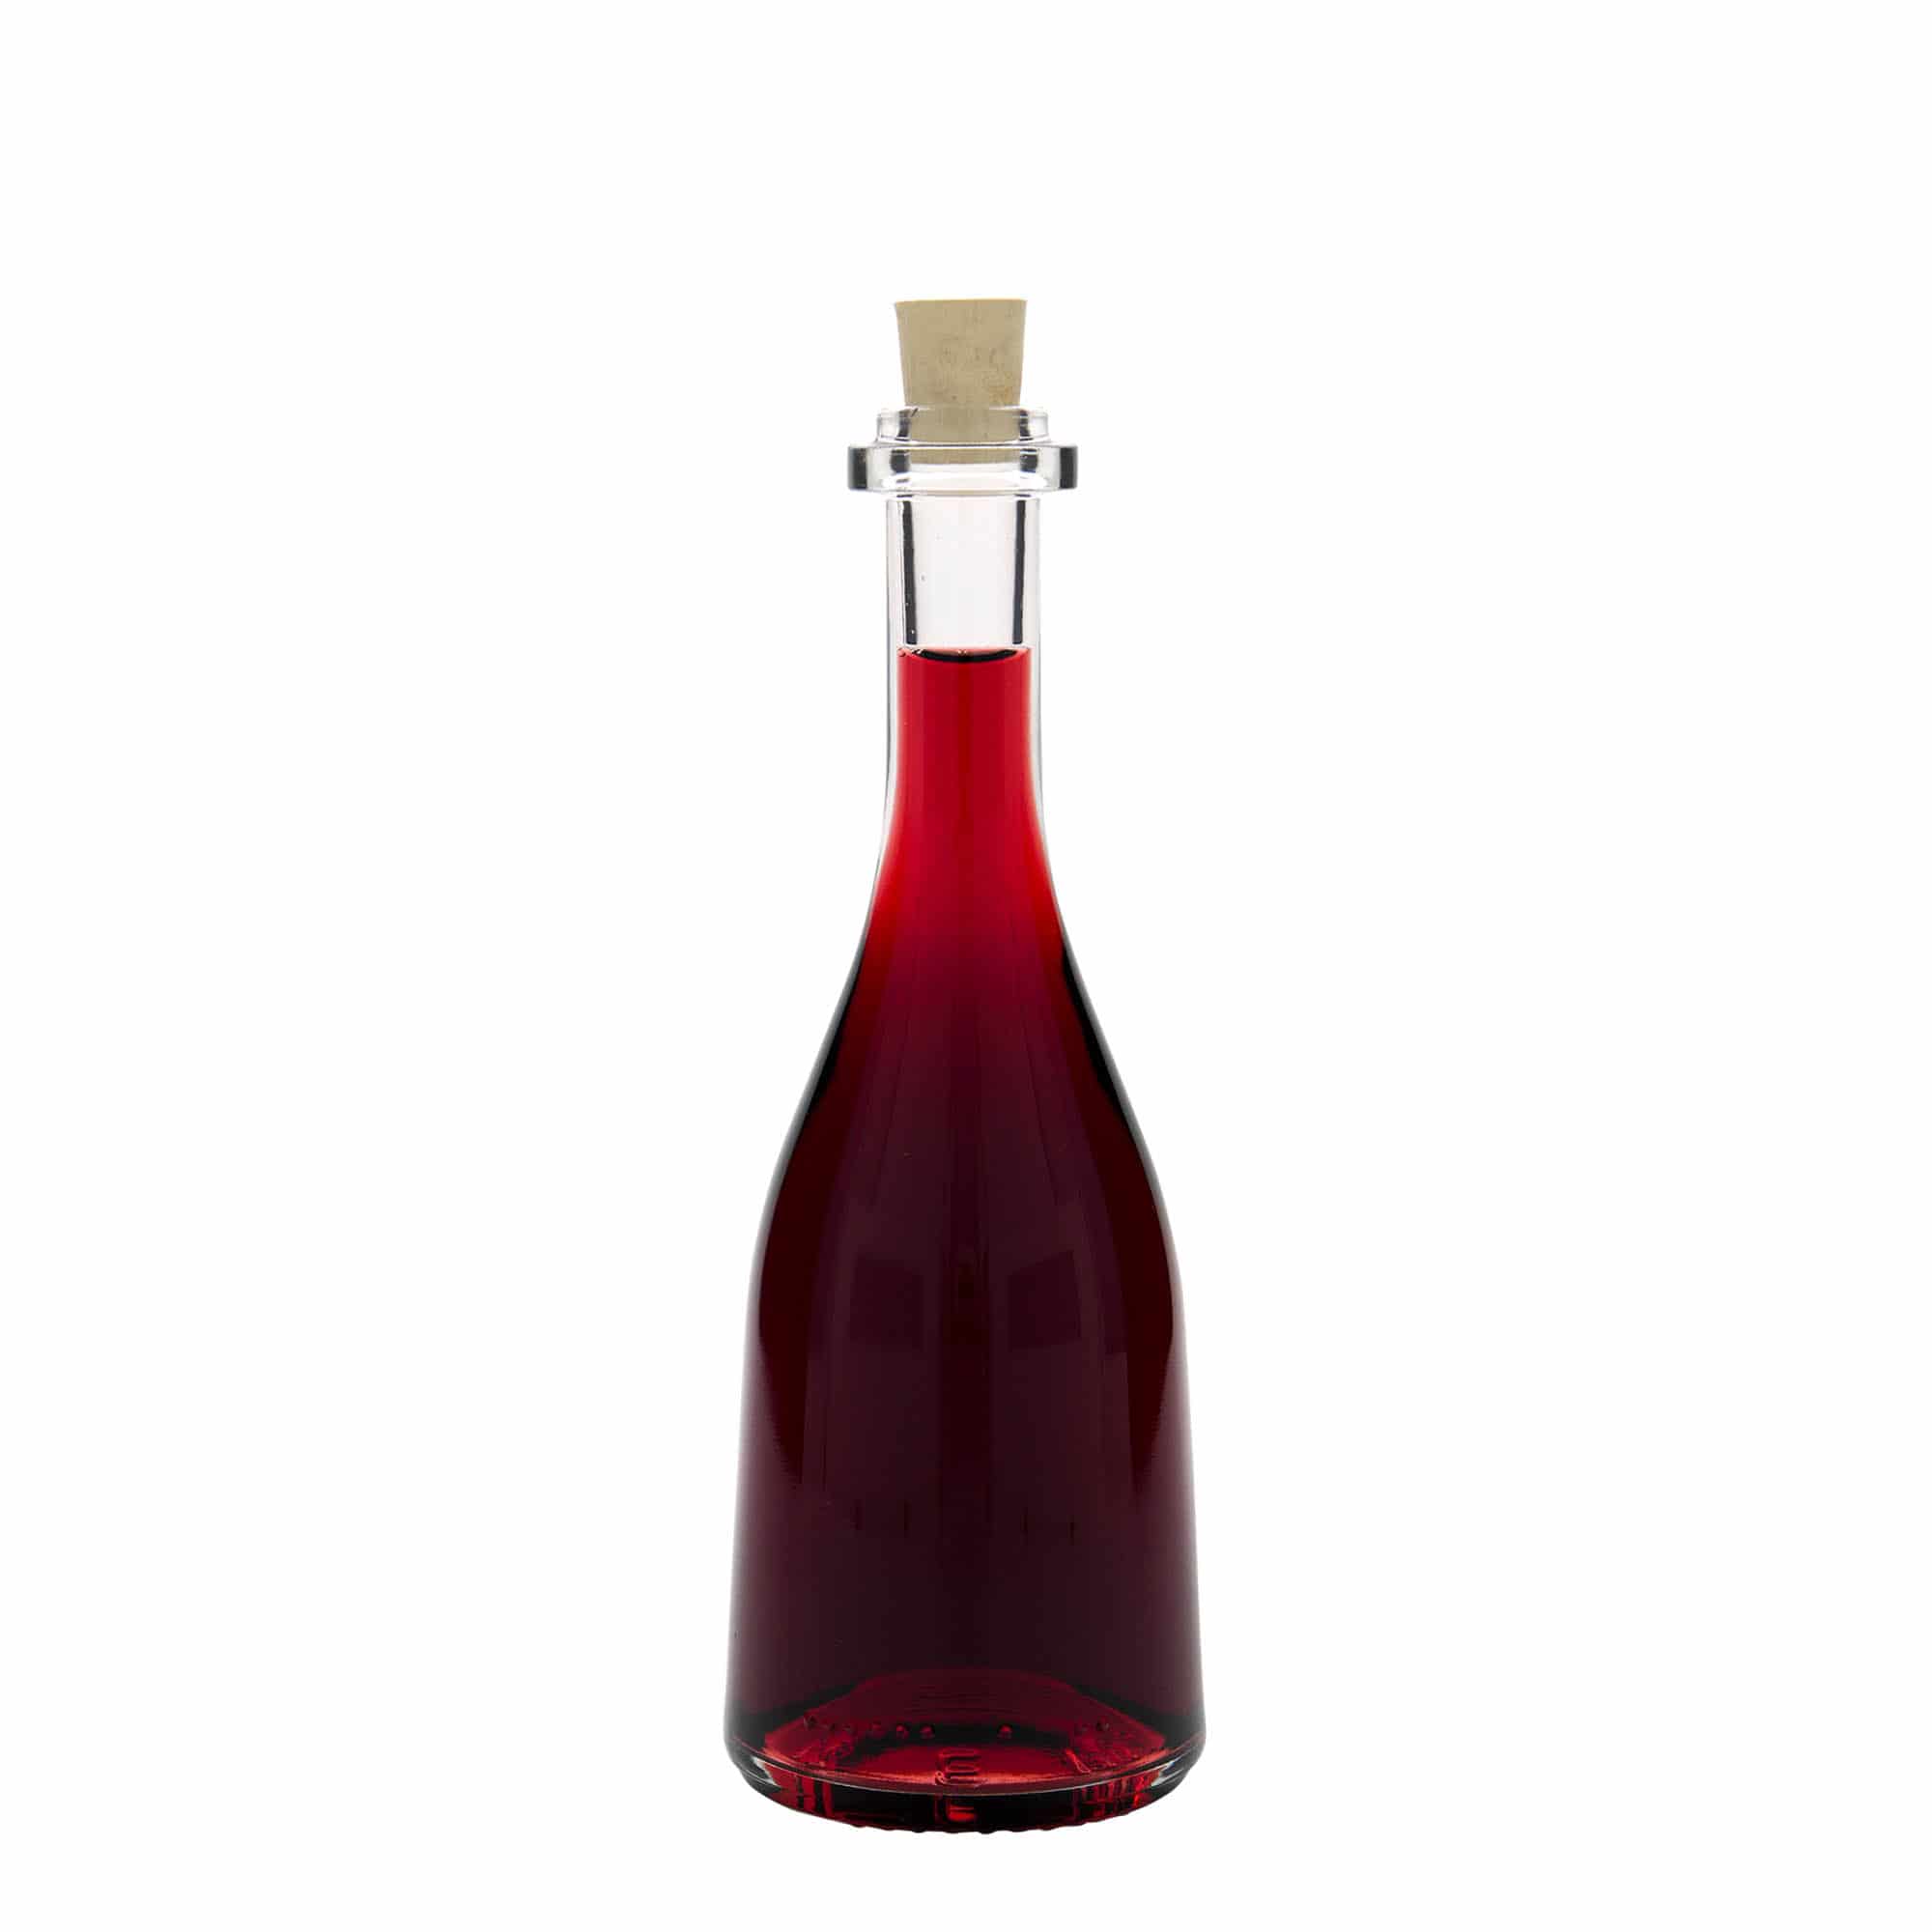 200 ml glass bottle 'Rustica', closure: cork